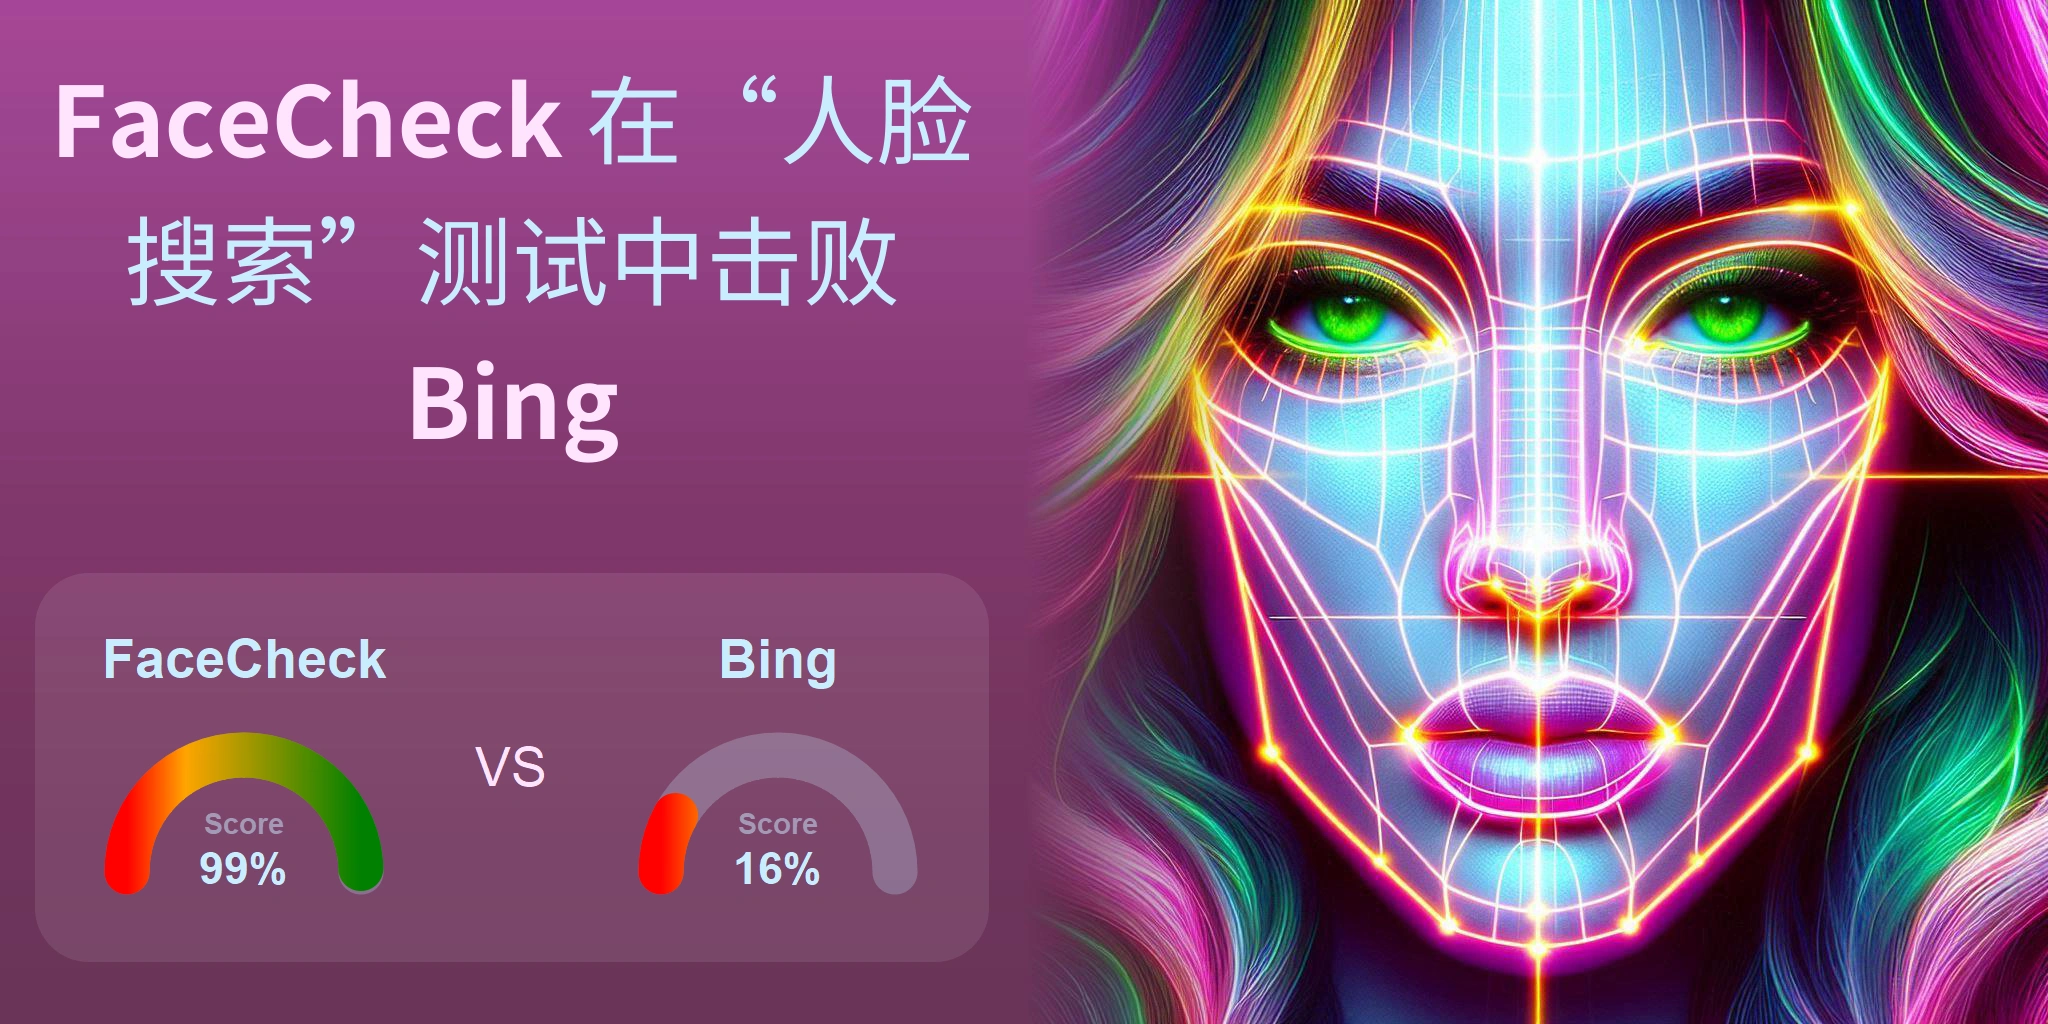 哪一个更适合人脸搜索：<br>FaceCheck 还是 Bing？